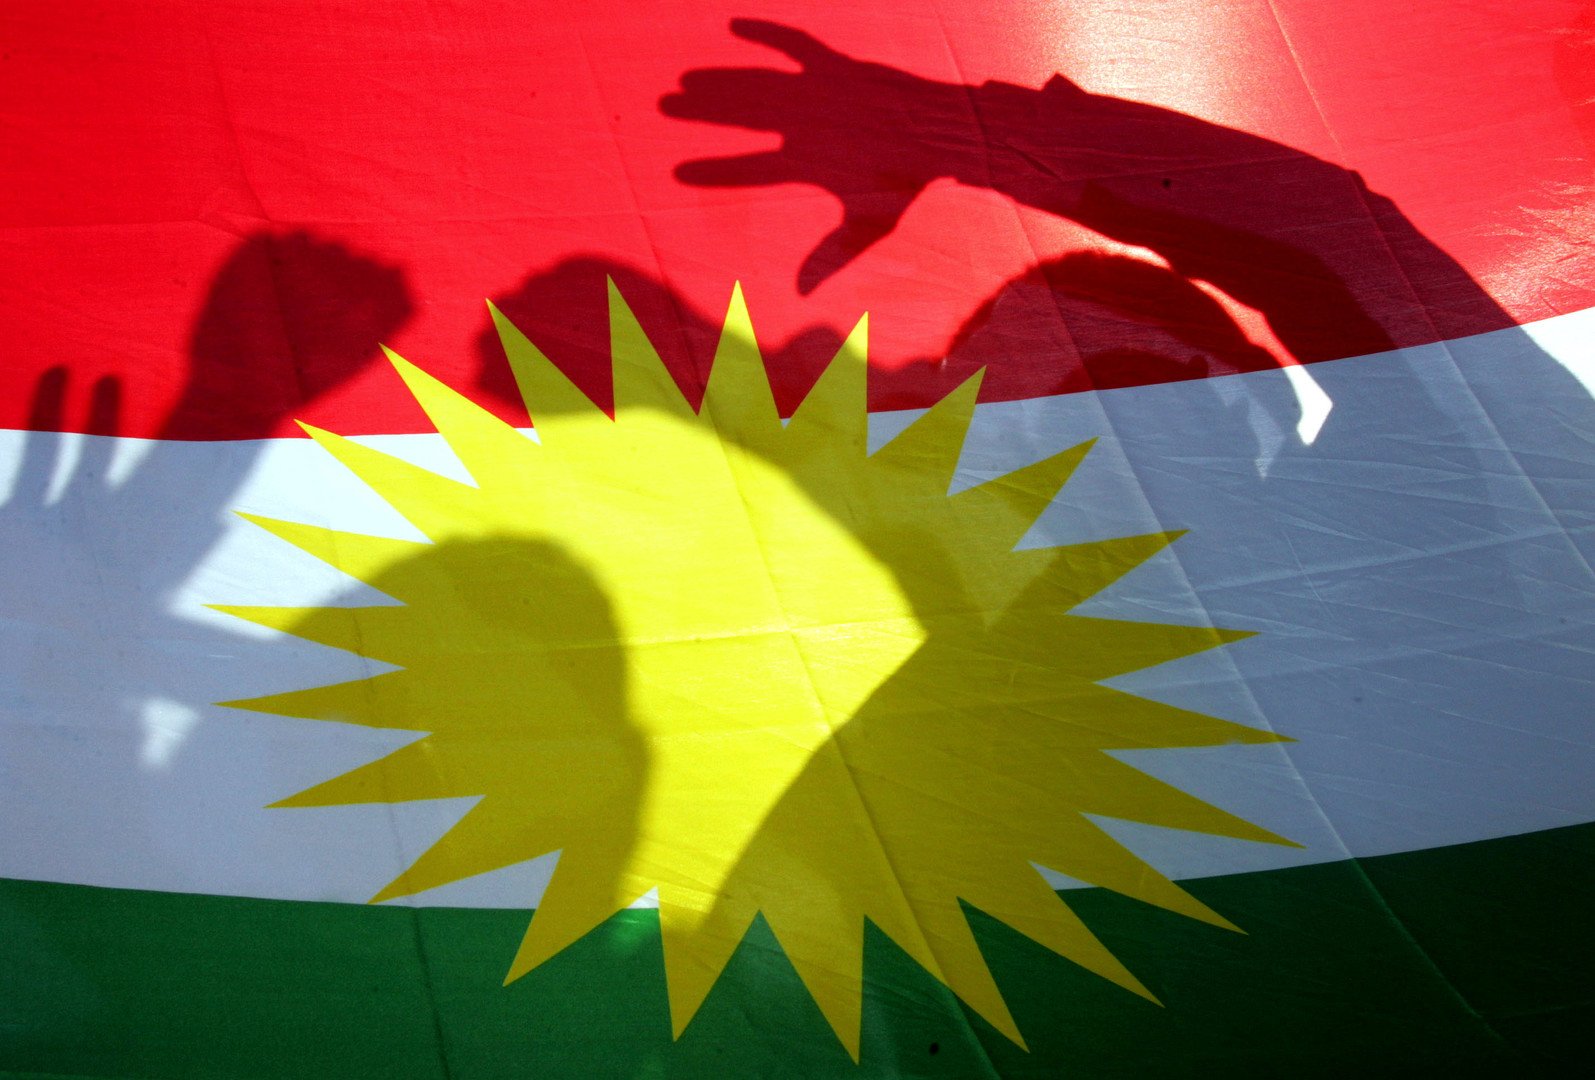 كردستان العراق يفتح باب الترشح لمنصب رئيس الإقليم